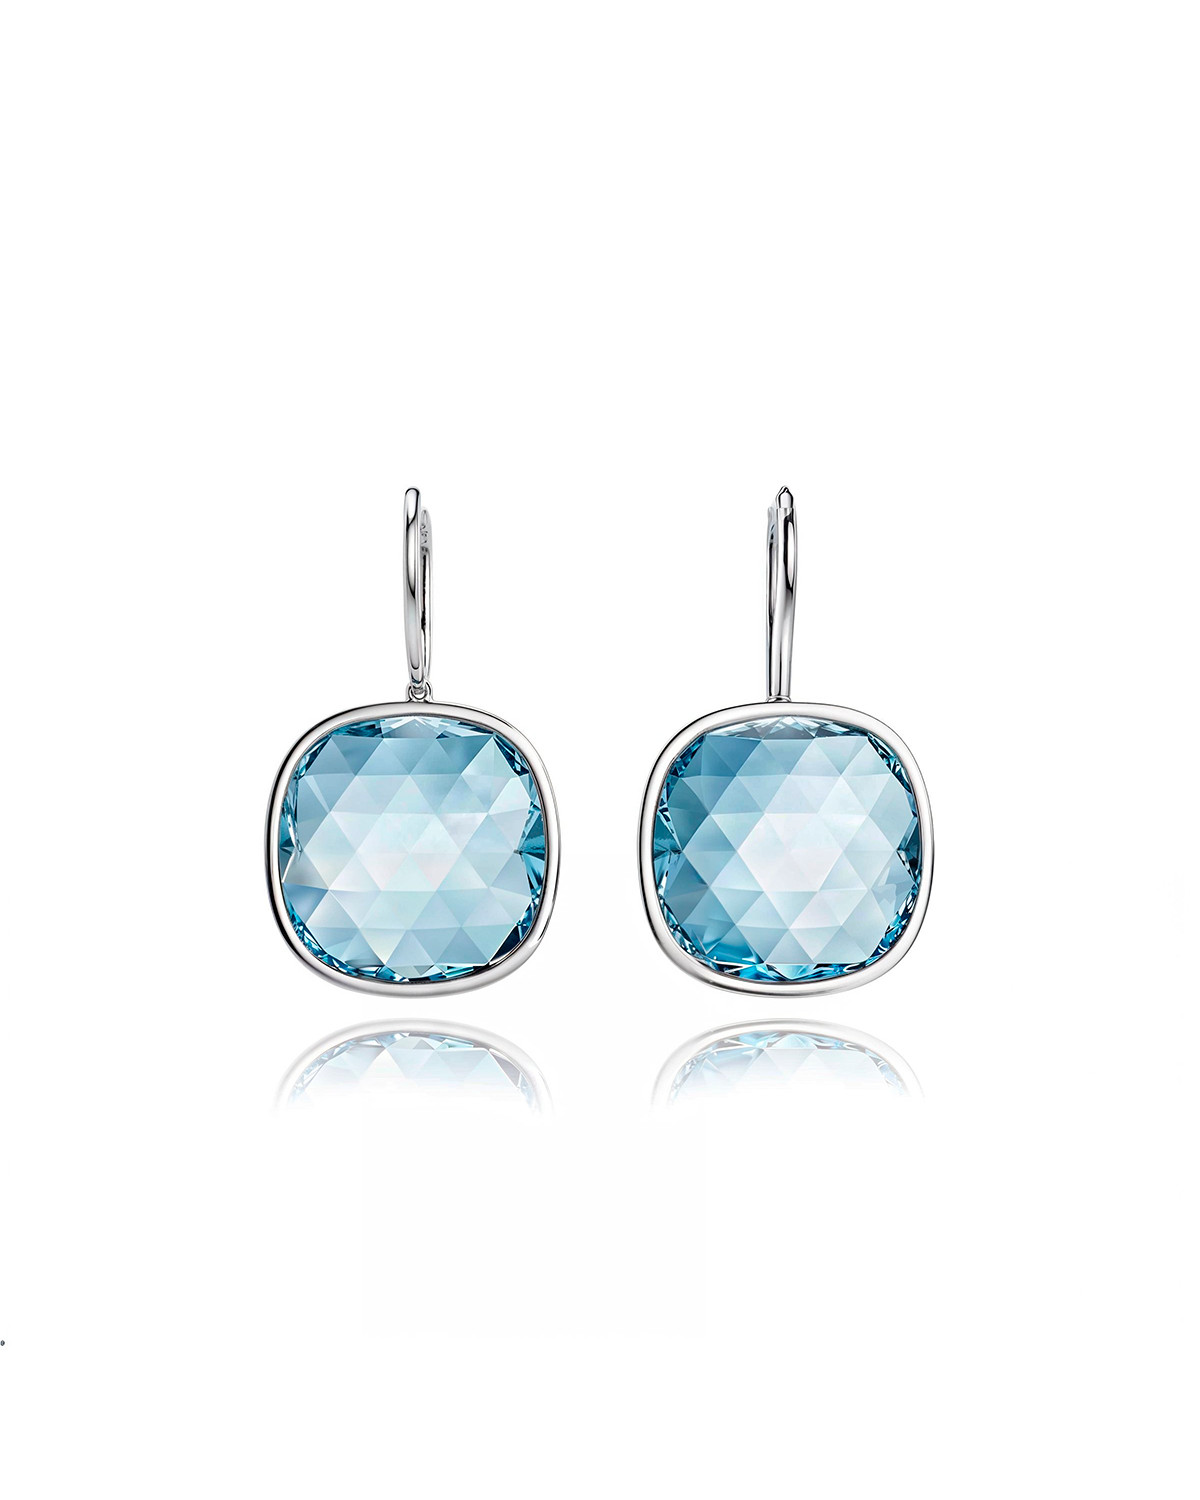 Sky Blue Topaz Earrings - 16 Carats